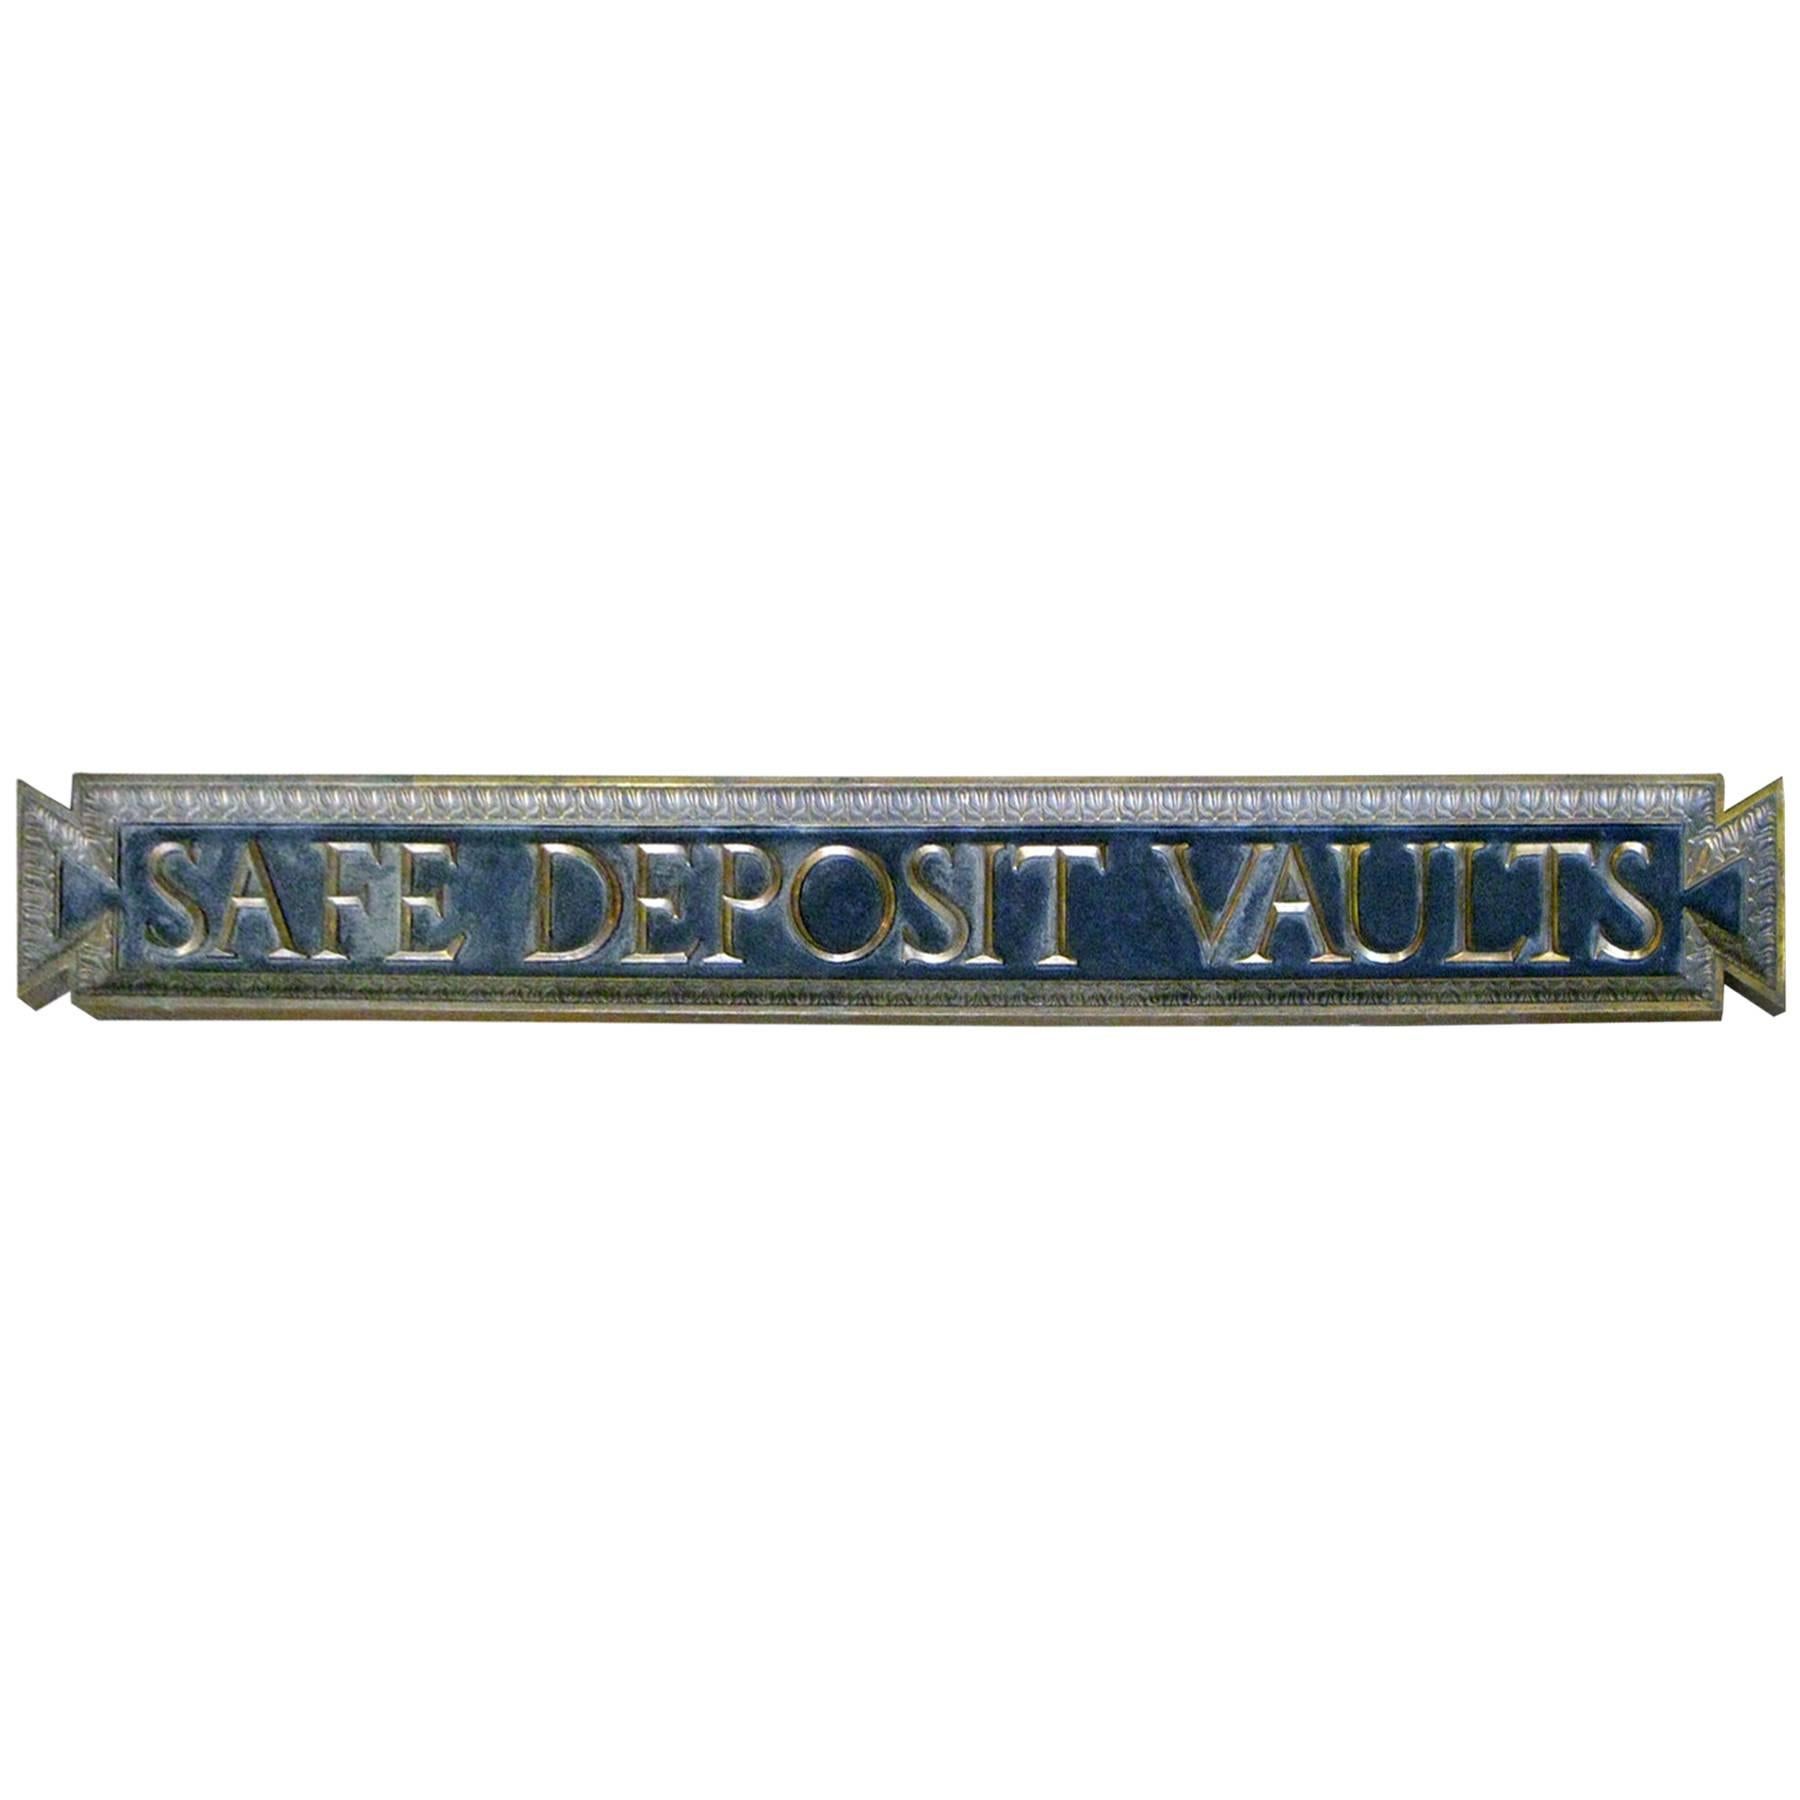 Bronze Advertising Bank Vaults Sign Circa 1912 Savannah Georgia